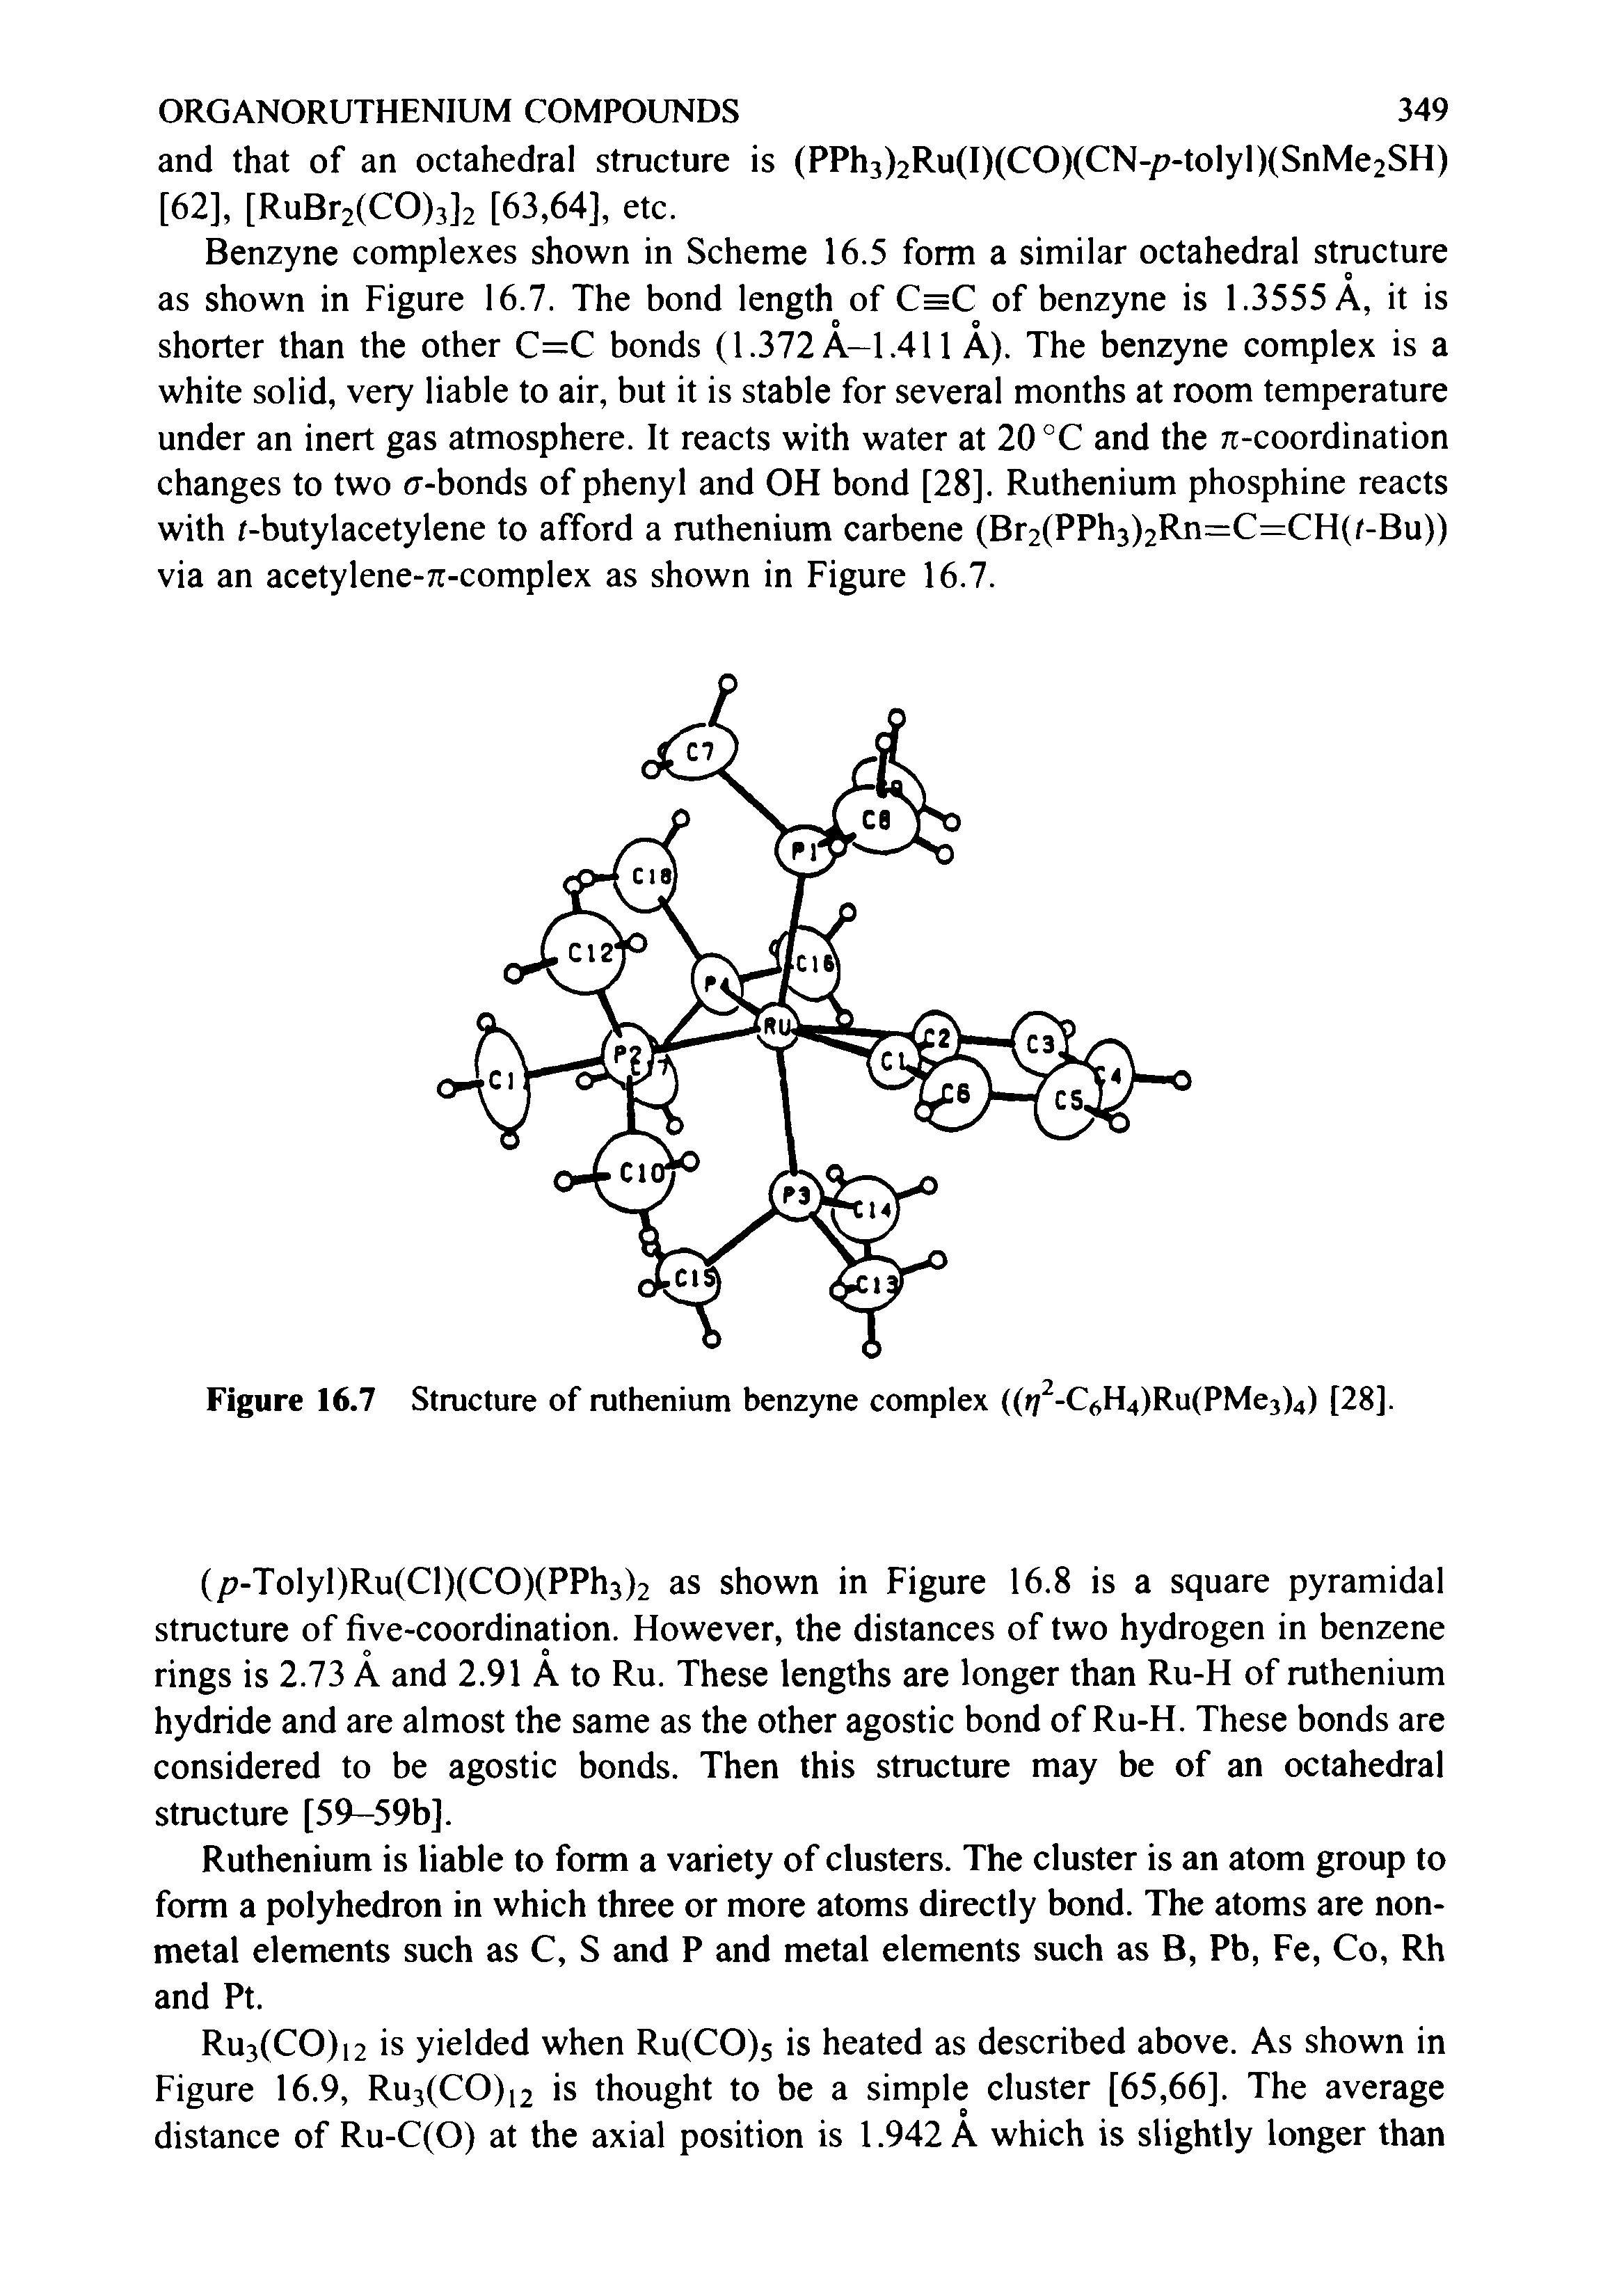 Figure 16.7 Structure of ruthenium benzyne complex (( / -C<>H4)Ru(PMe3)4) [28].